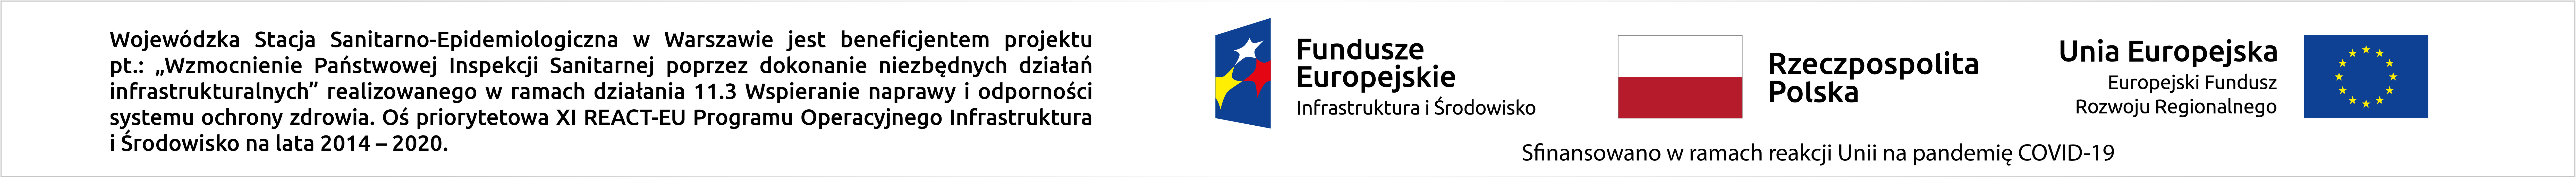 Logotypy Funduszy Europejskich, RP i UE